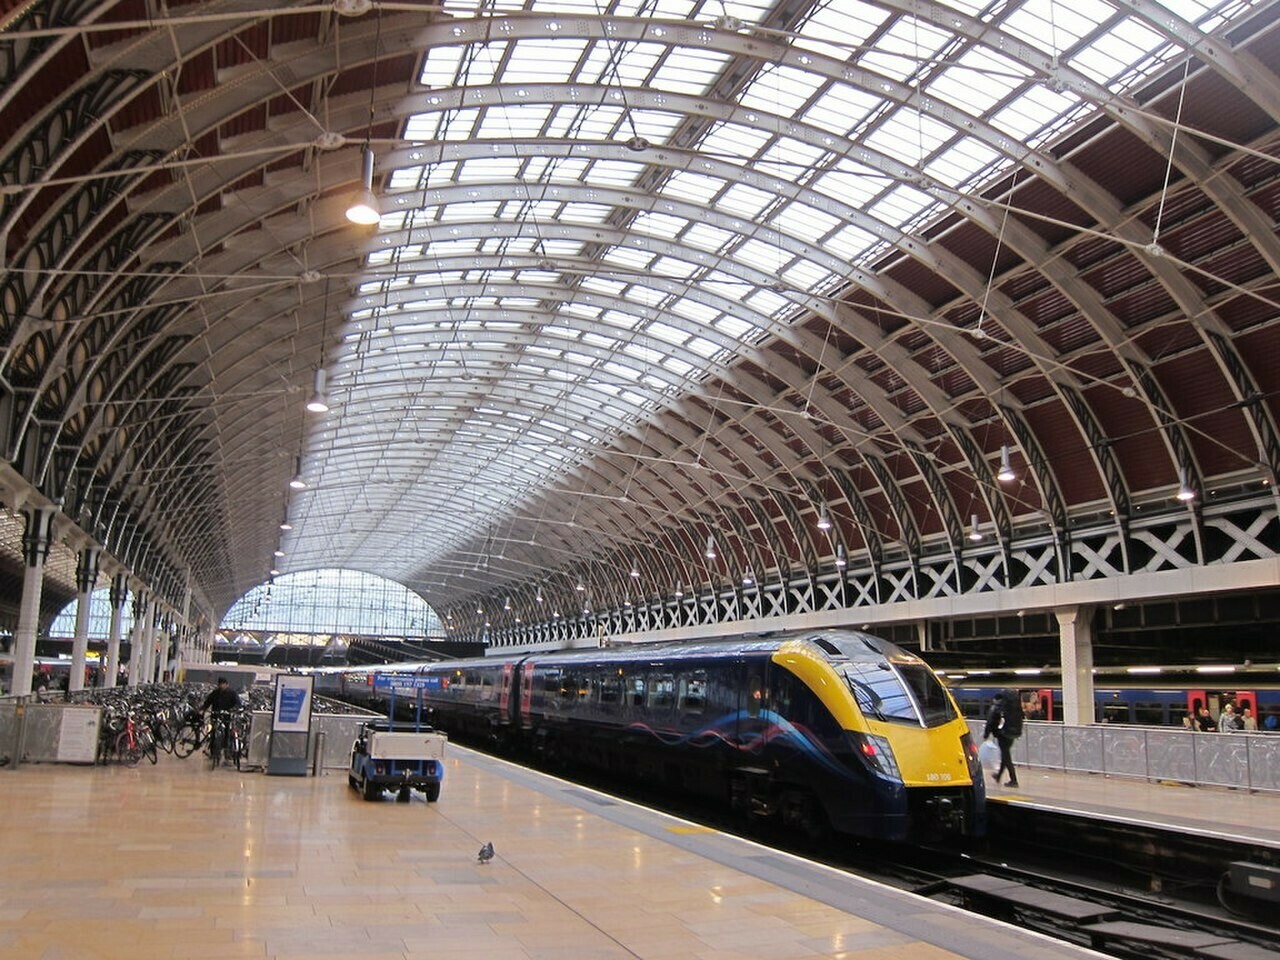 في خطوة لمواجهة غلاء المعيشة ..عدد من تذاكر القطار في المملكة المتحدة تخفض أسعارها إلى النصف 